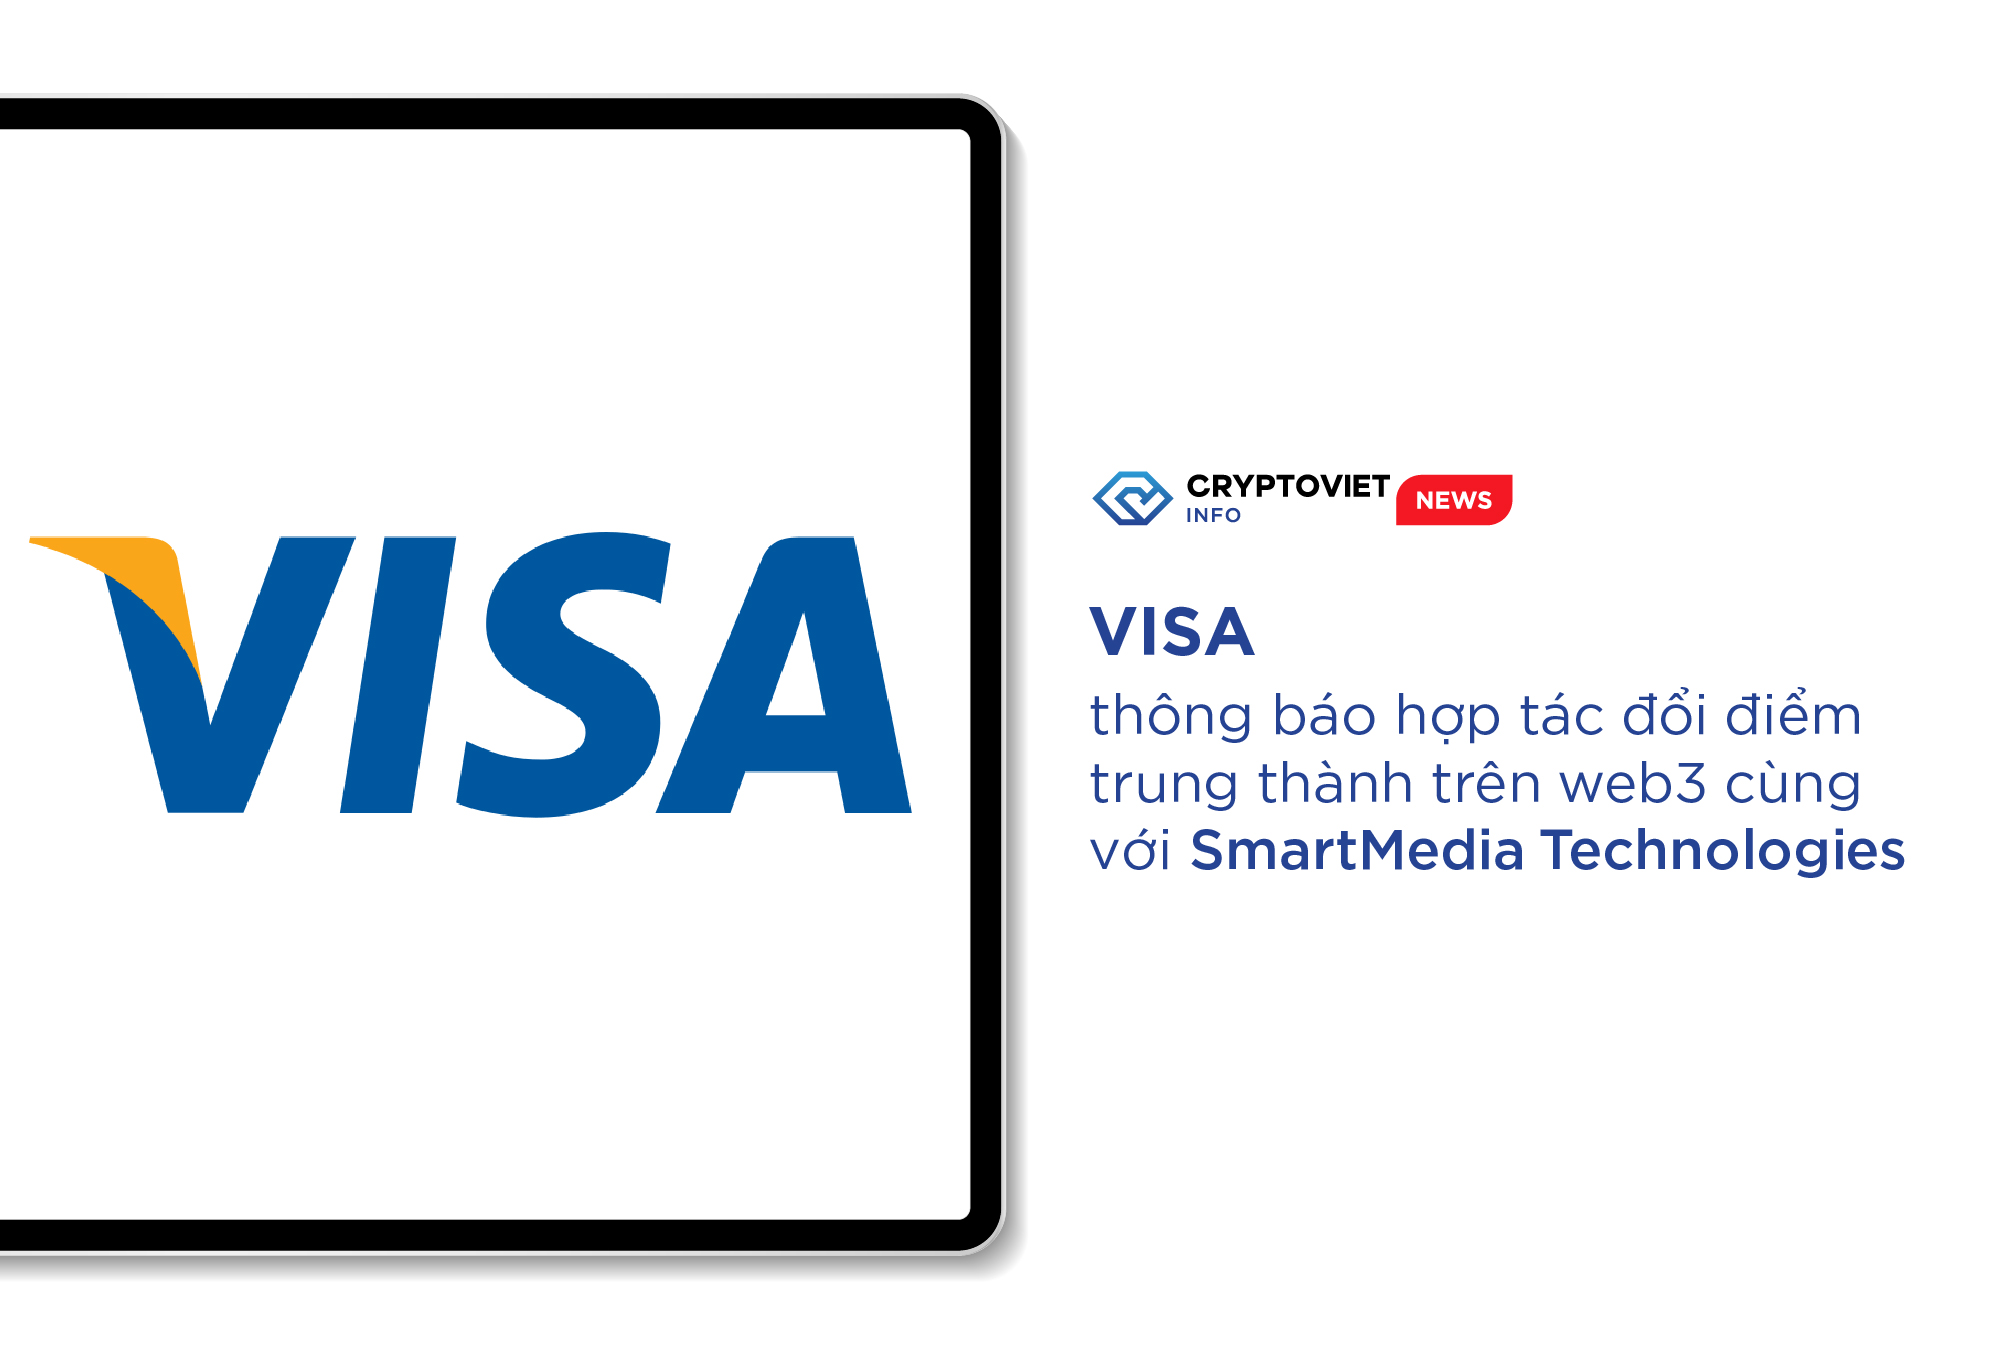 Visa thông báo hợp tác đổi điểm trung thành trên web3 cùng với SmartMedia Technologies